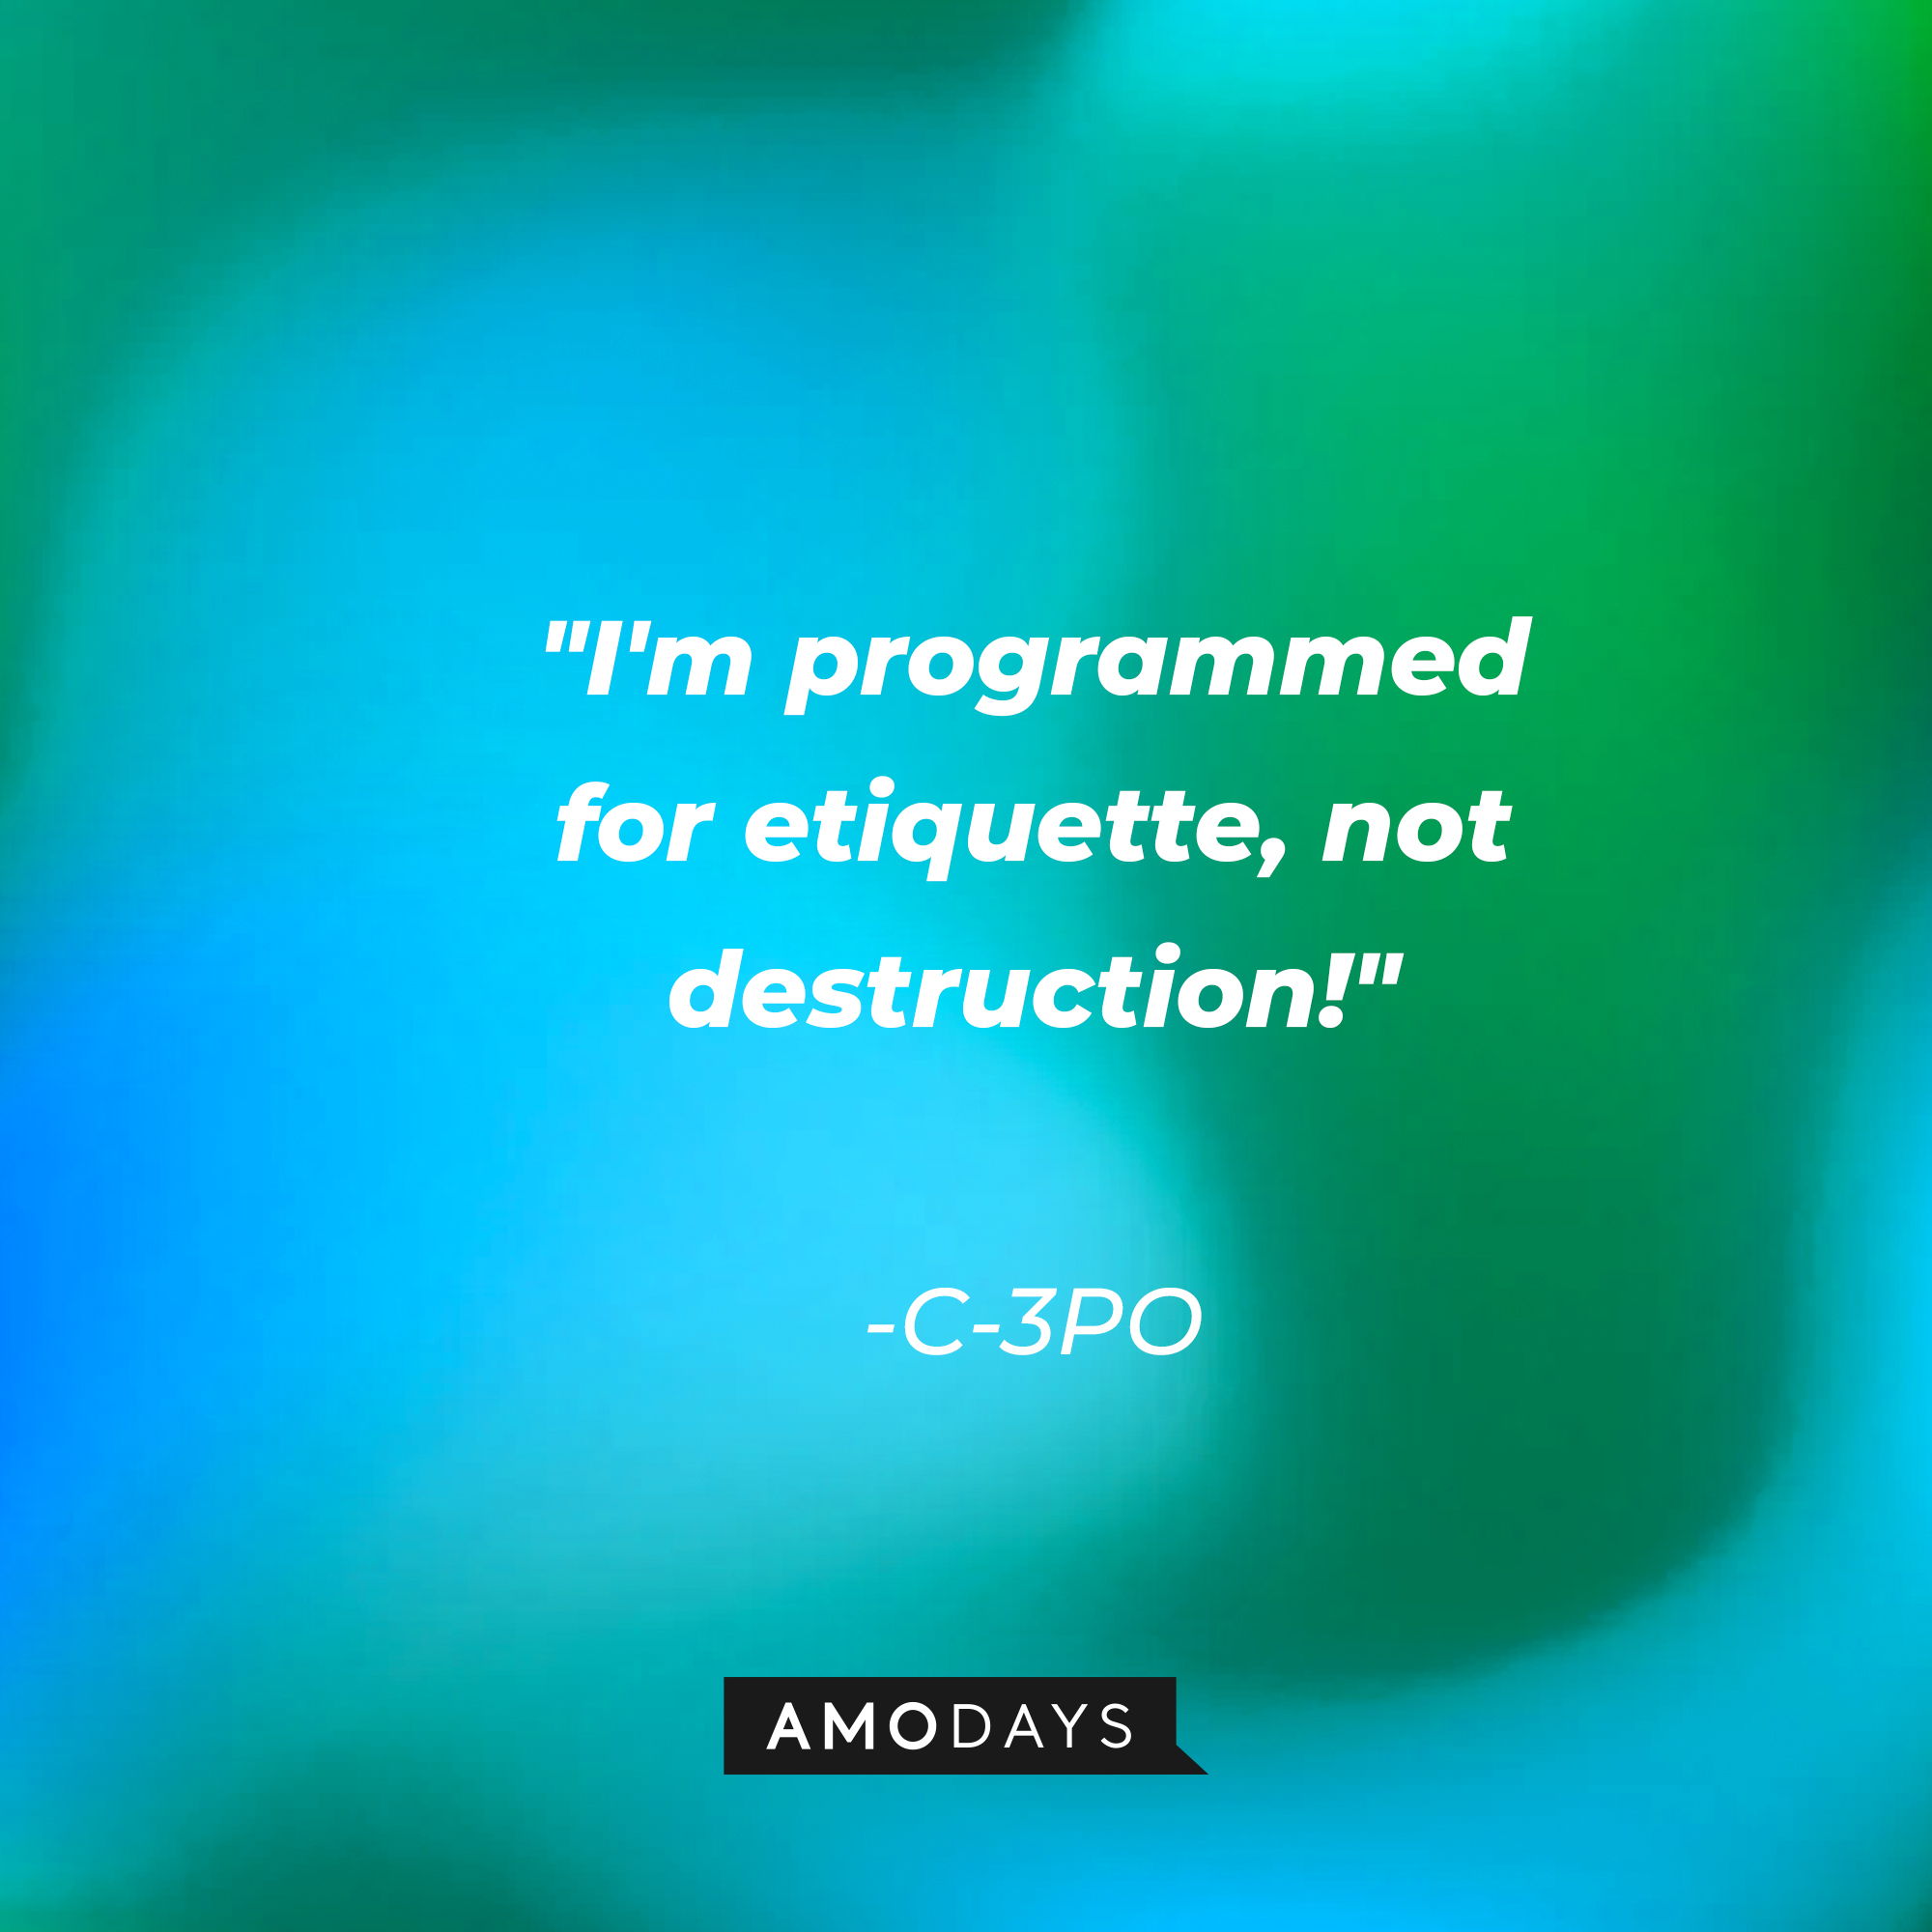 C-3PO's quote: "I'm programmed for etiquette, not destruction!" | Source: AmoDays